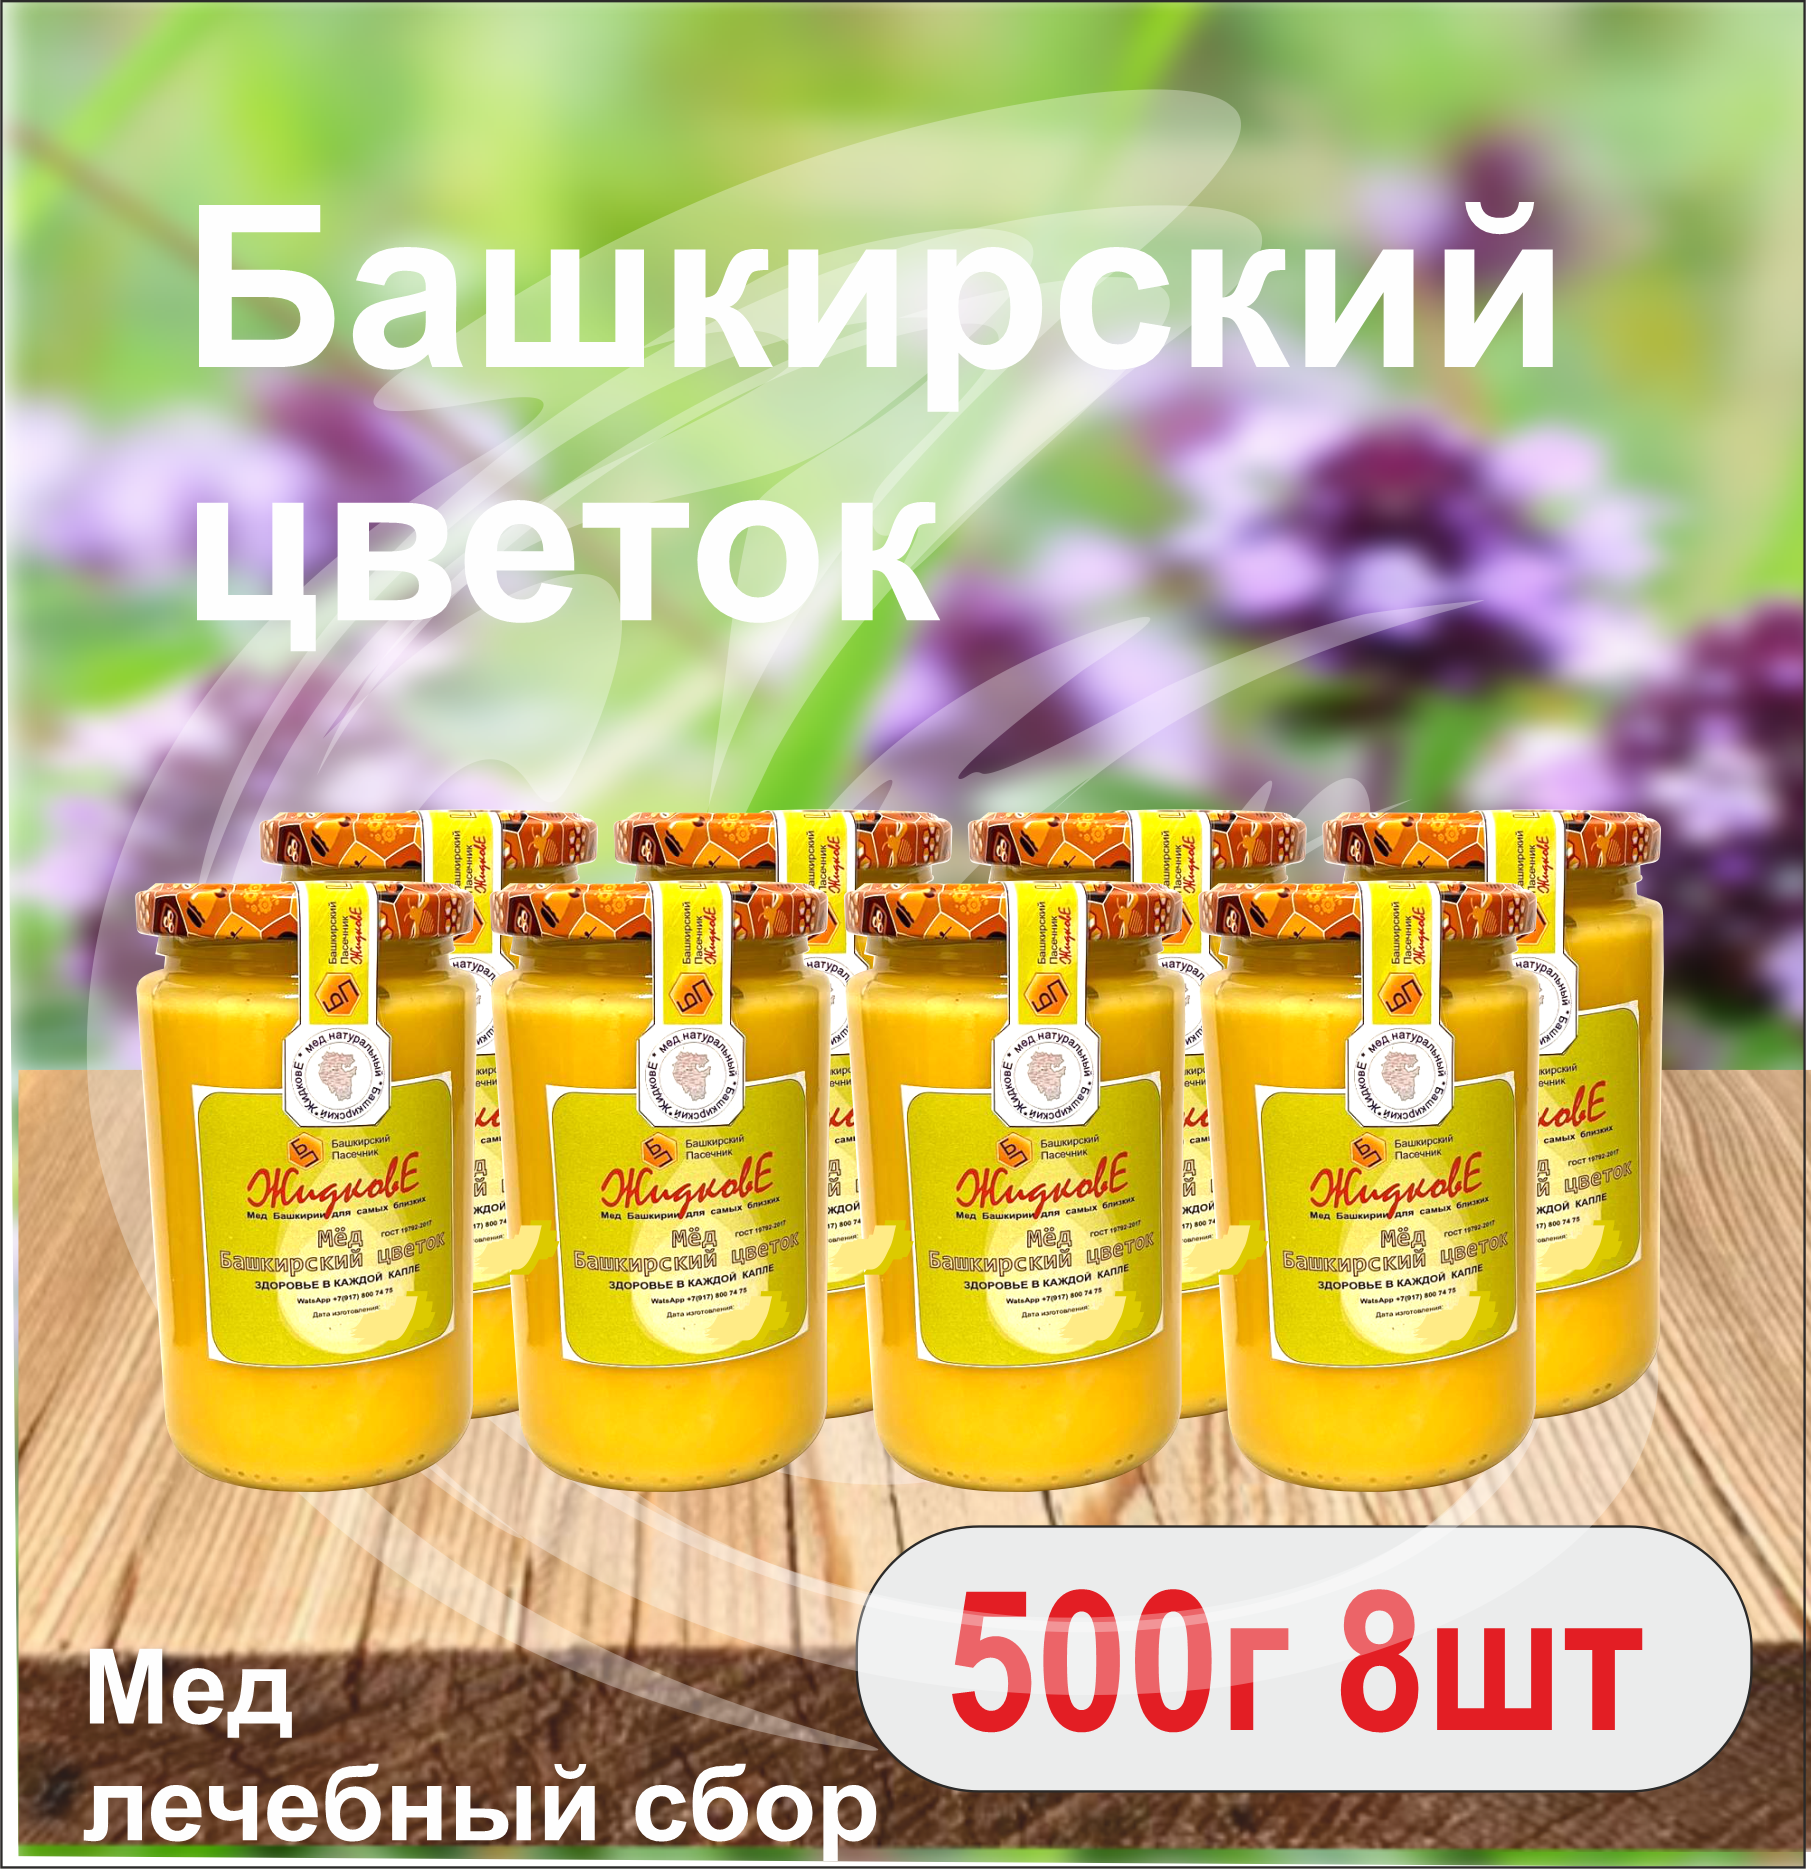 Мед Башкирский цветок 500 г  8 шт. Склад Москва